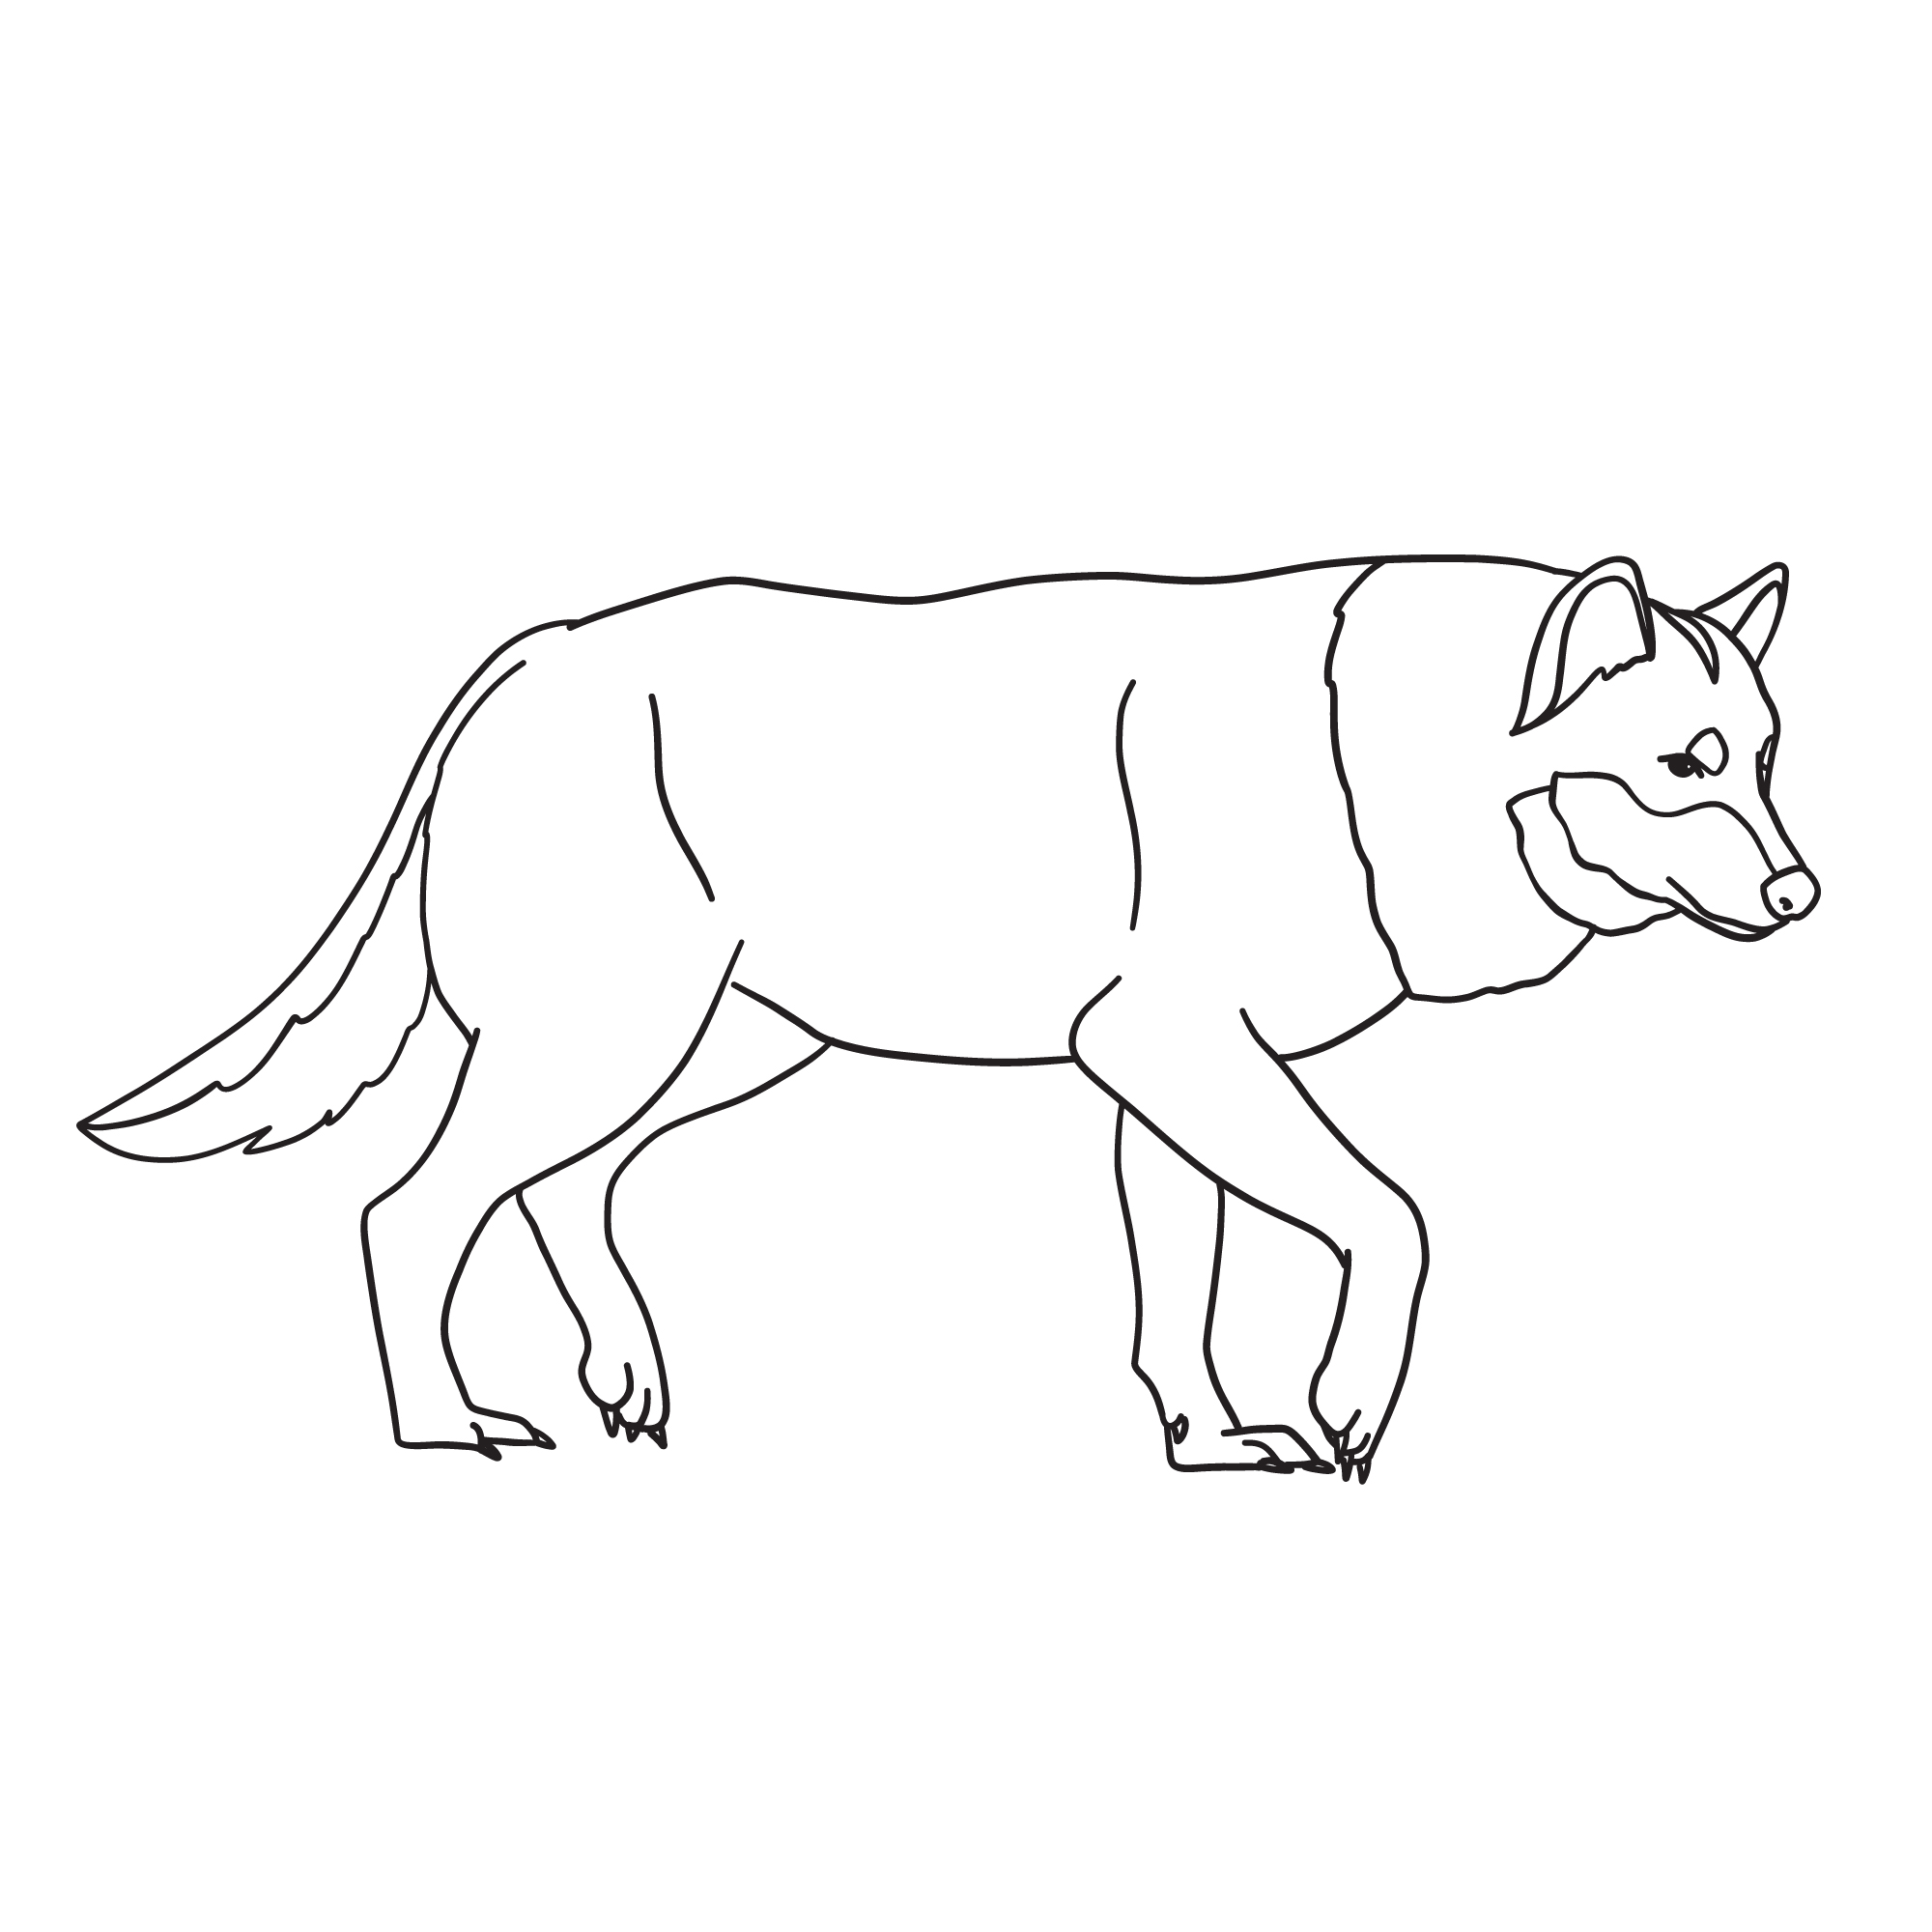 Раскраска зимний волк формата А4 в высоком качестве